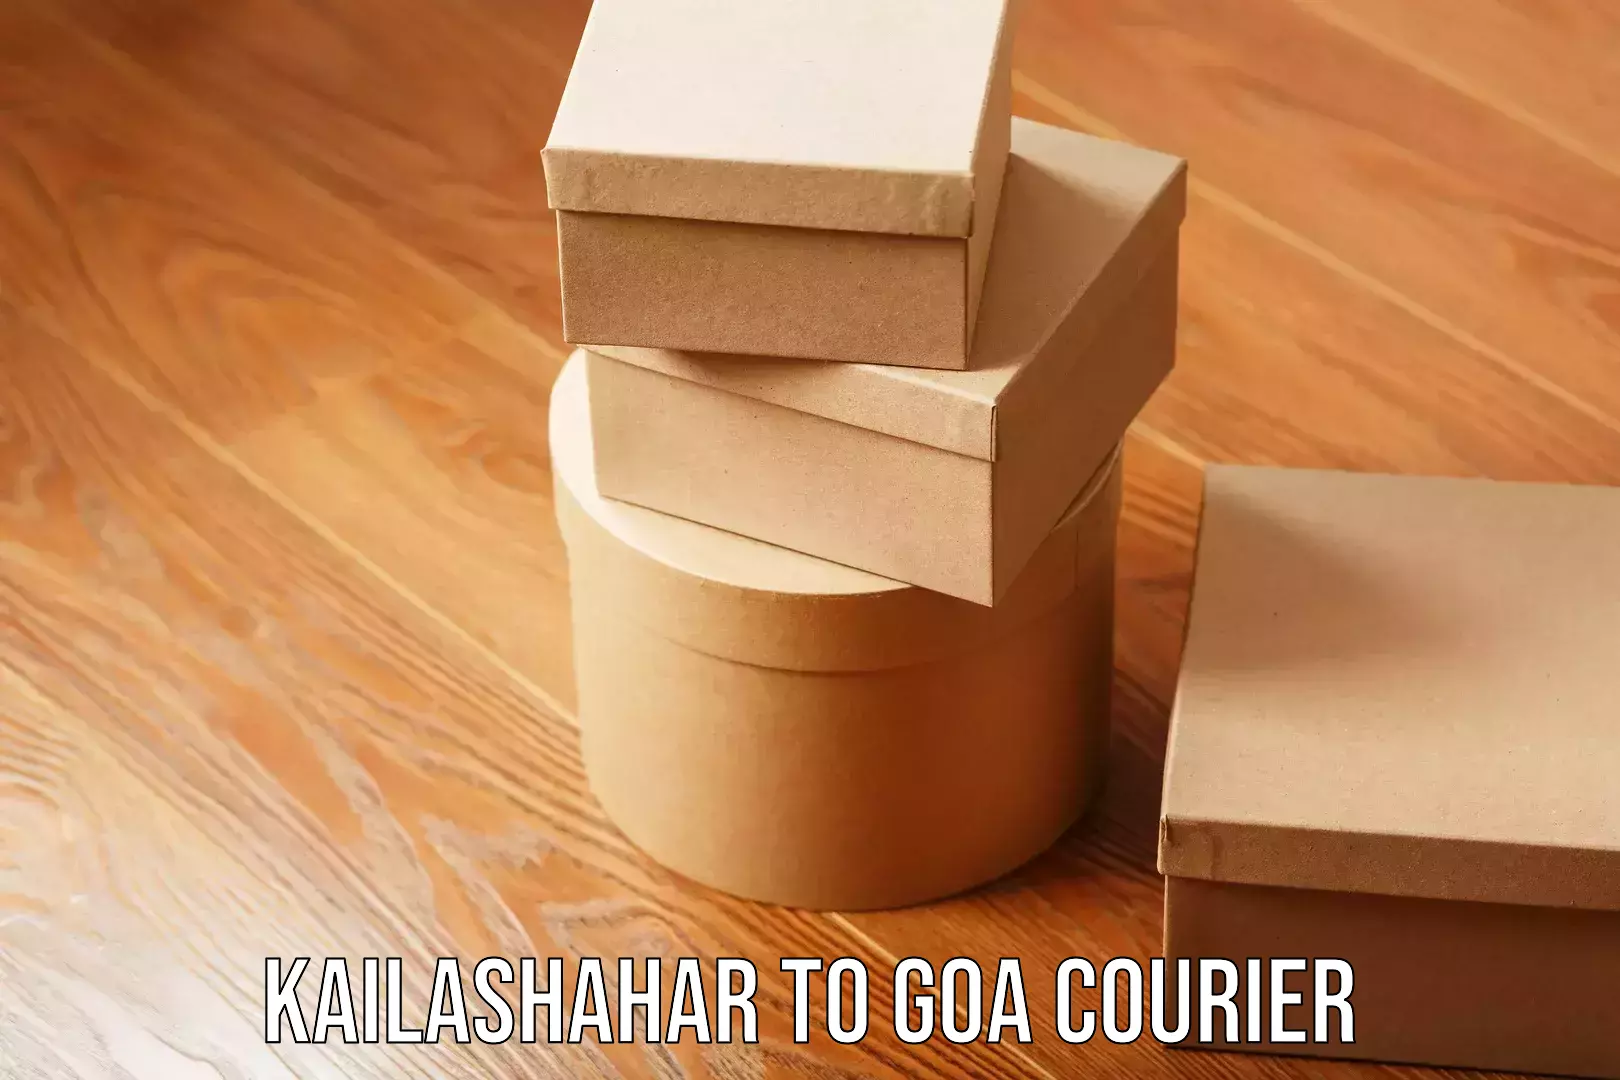 Local courier options Kailashahar to Goa